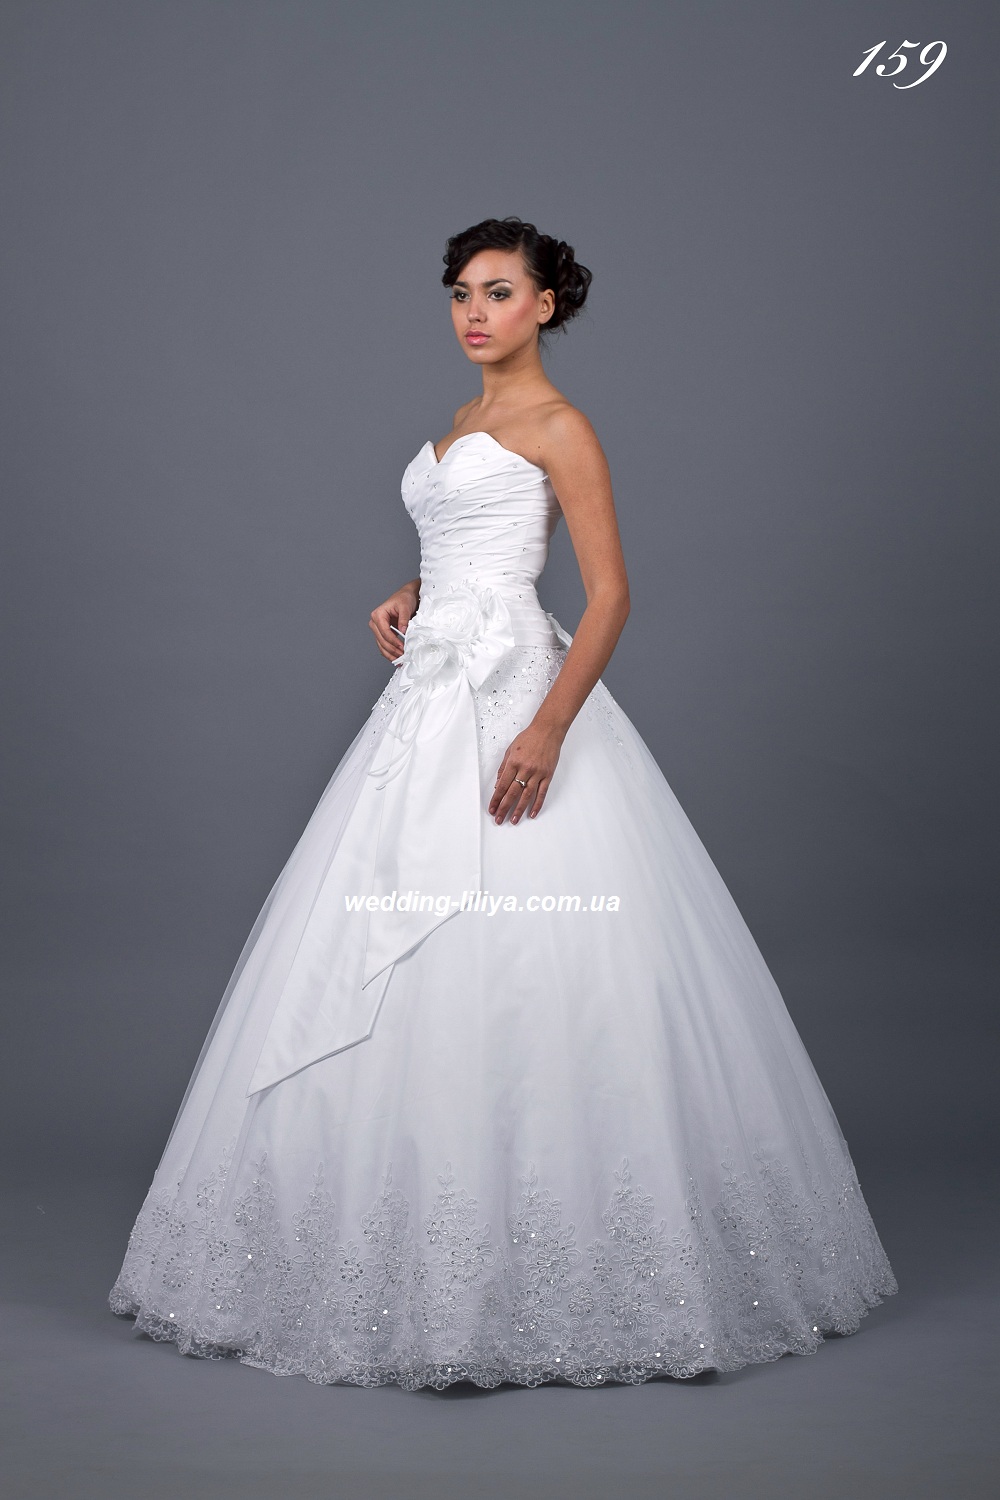 Свадебное платье №159